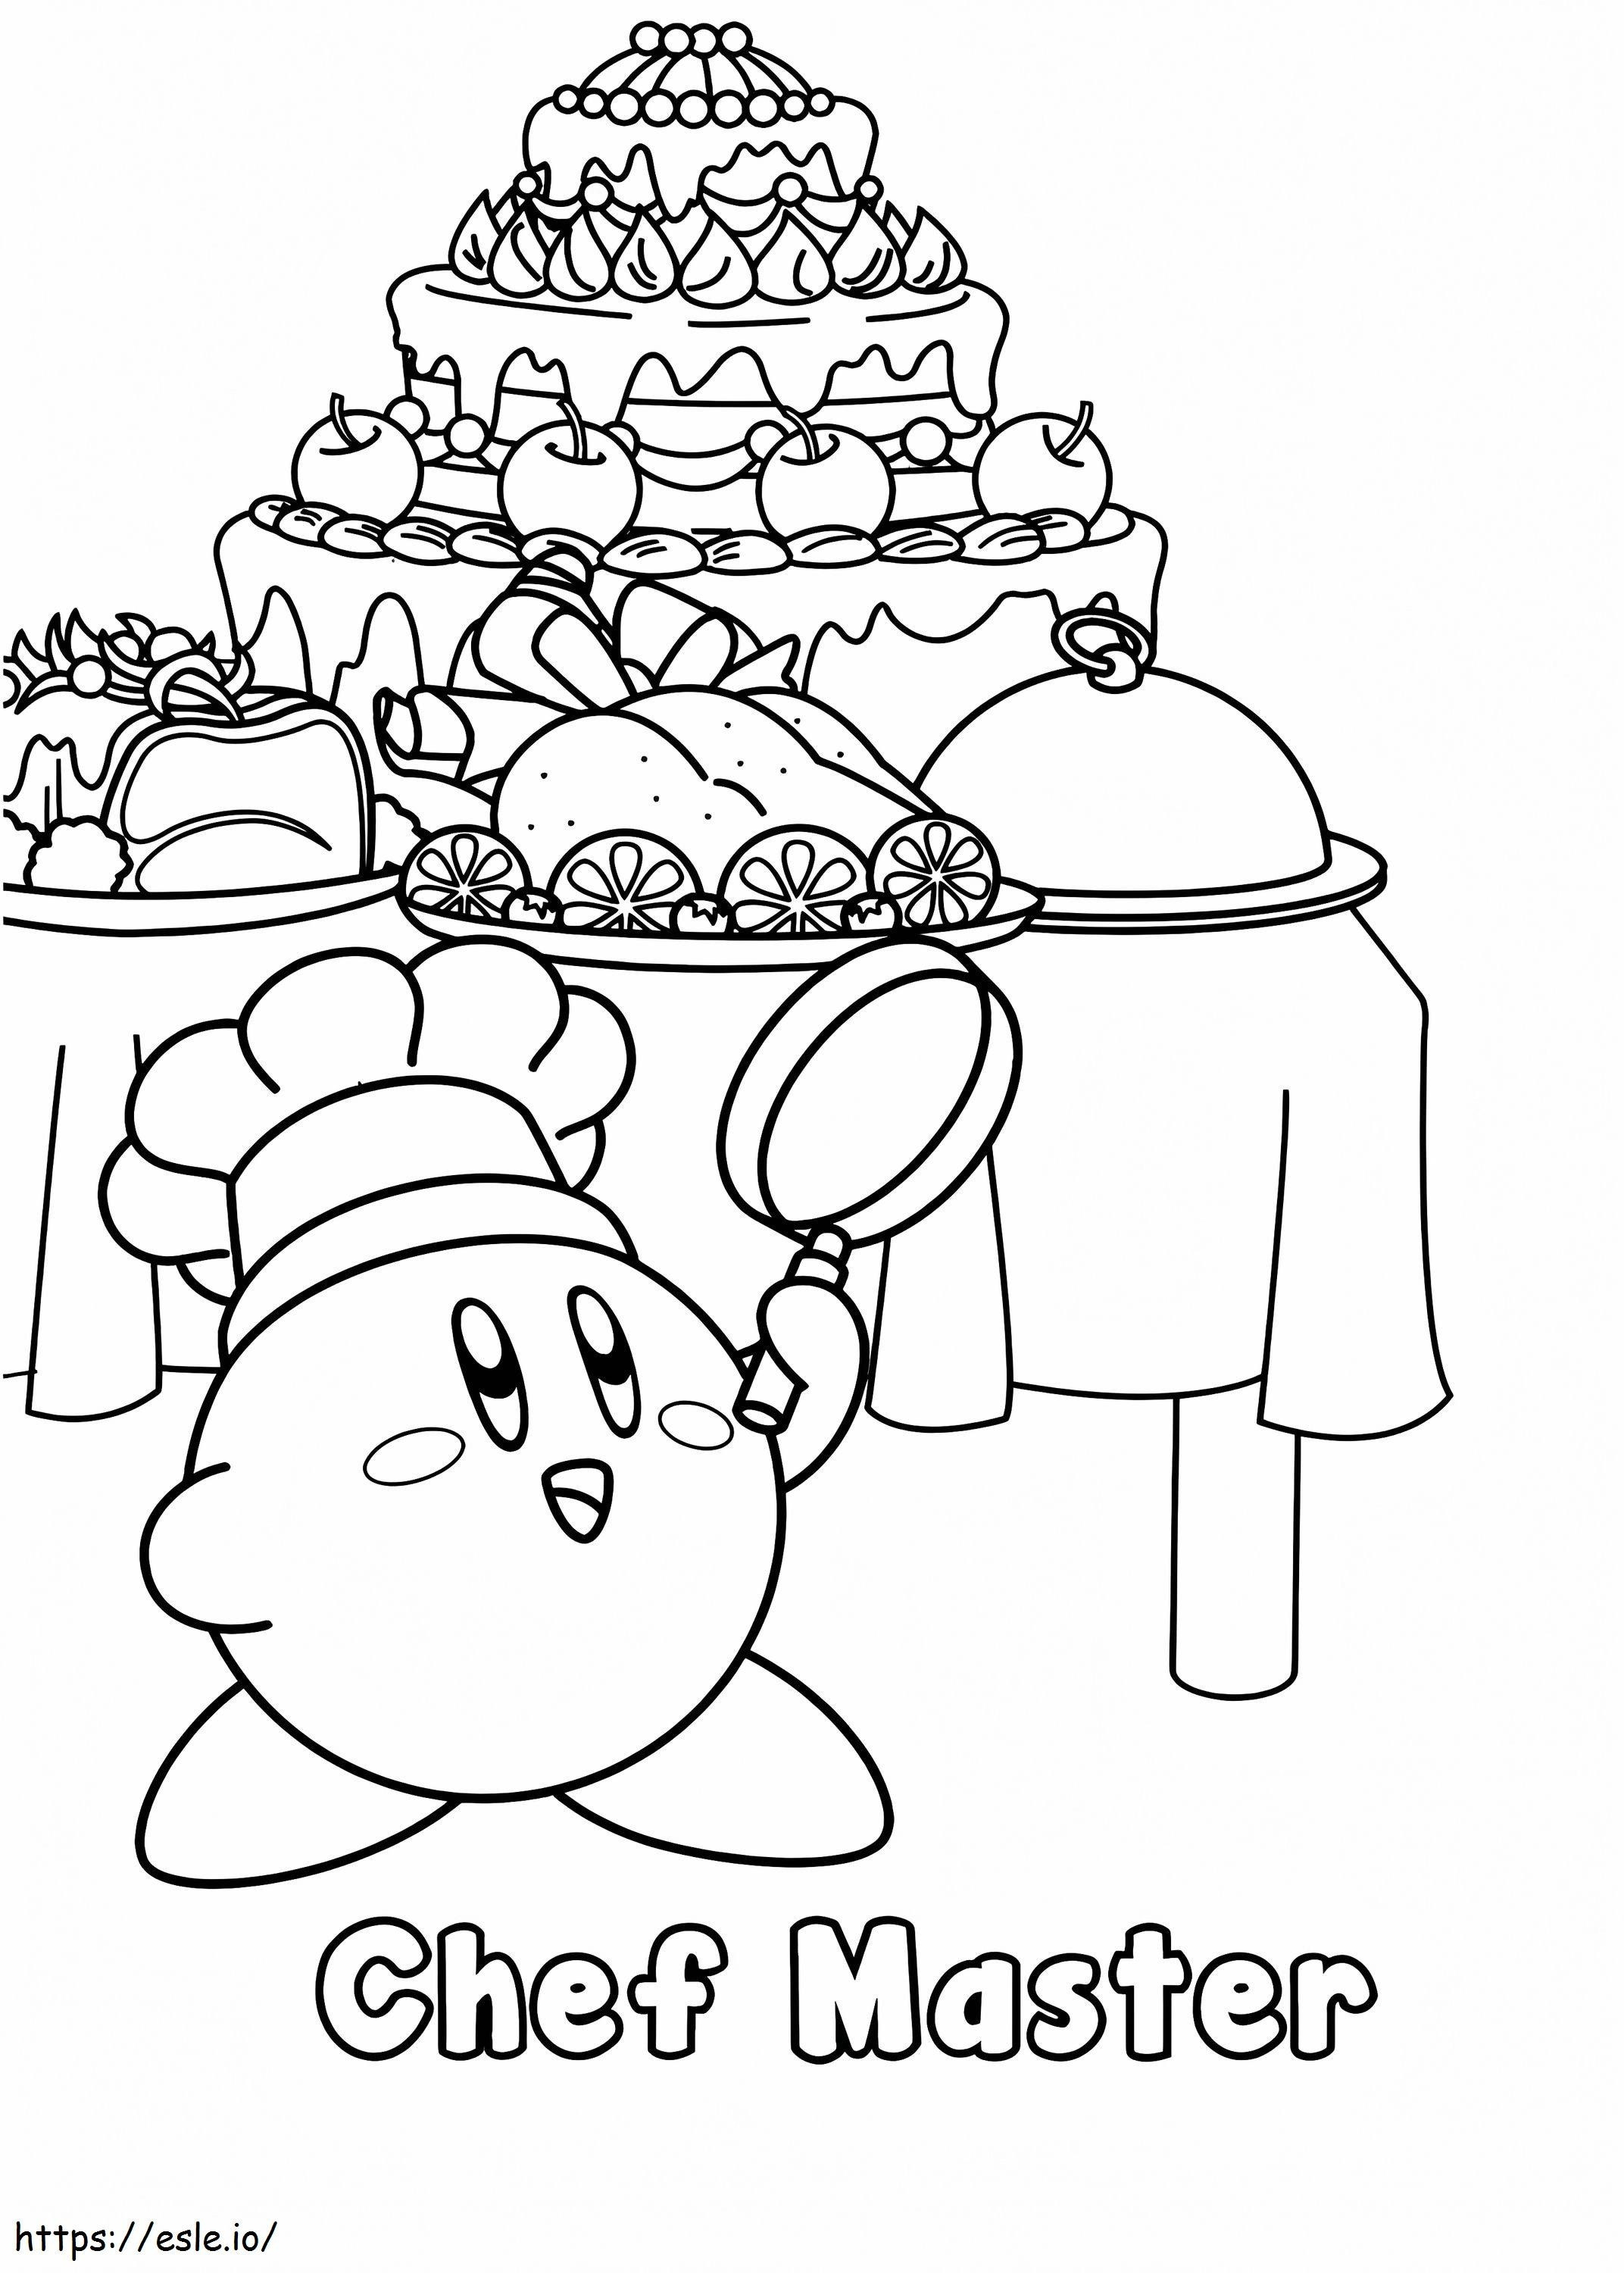 Coloriage 1575687464 Maître cuisinier Kirby à imprimer dessin